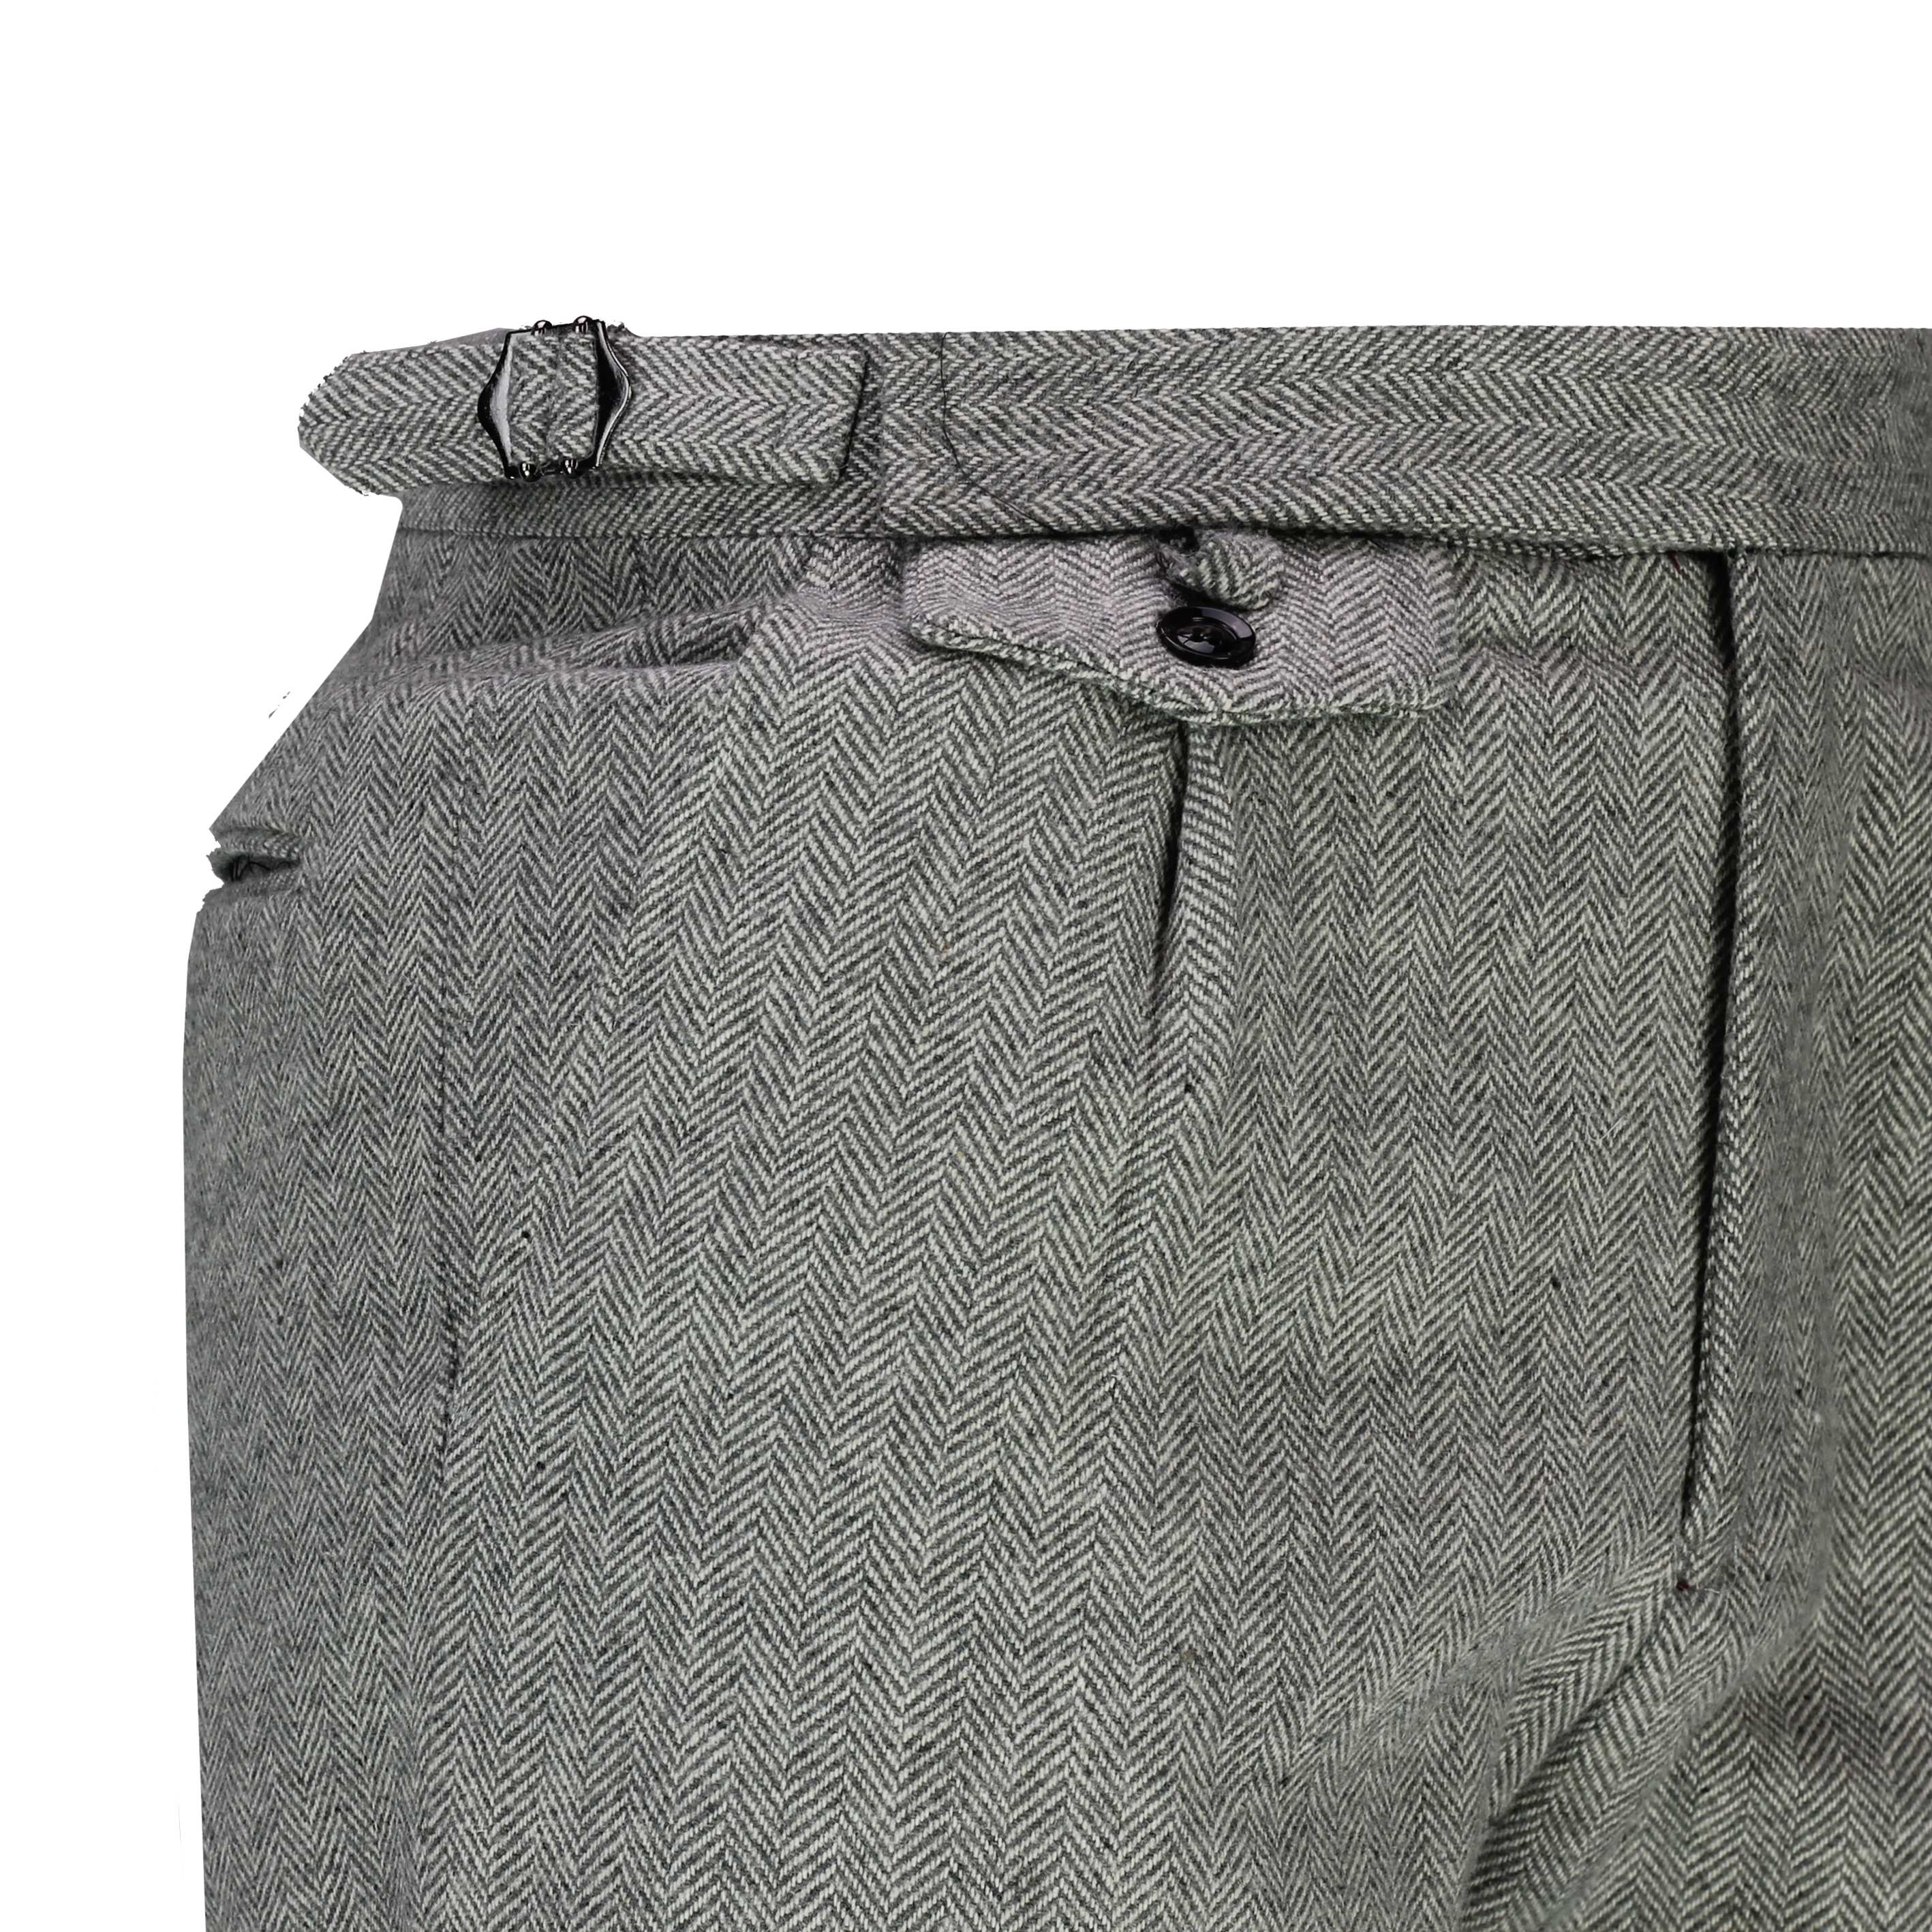 Mens Herringbone Tweed Check Trouser 1920s Peaky Blinders Tailored Fit ...